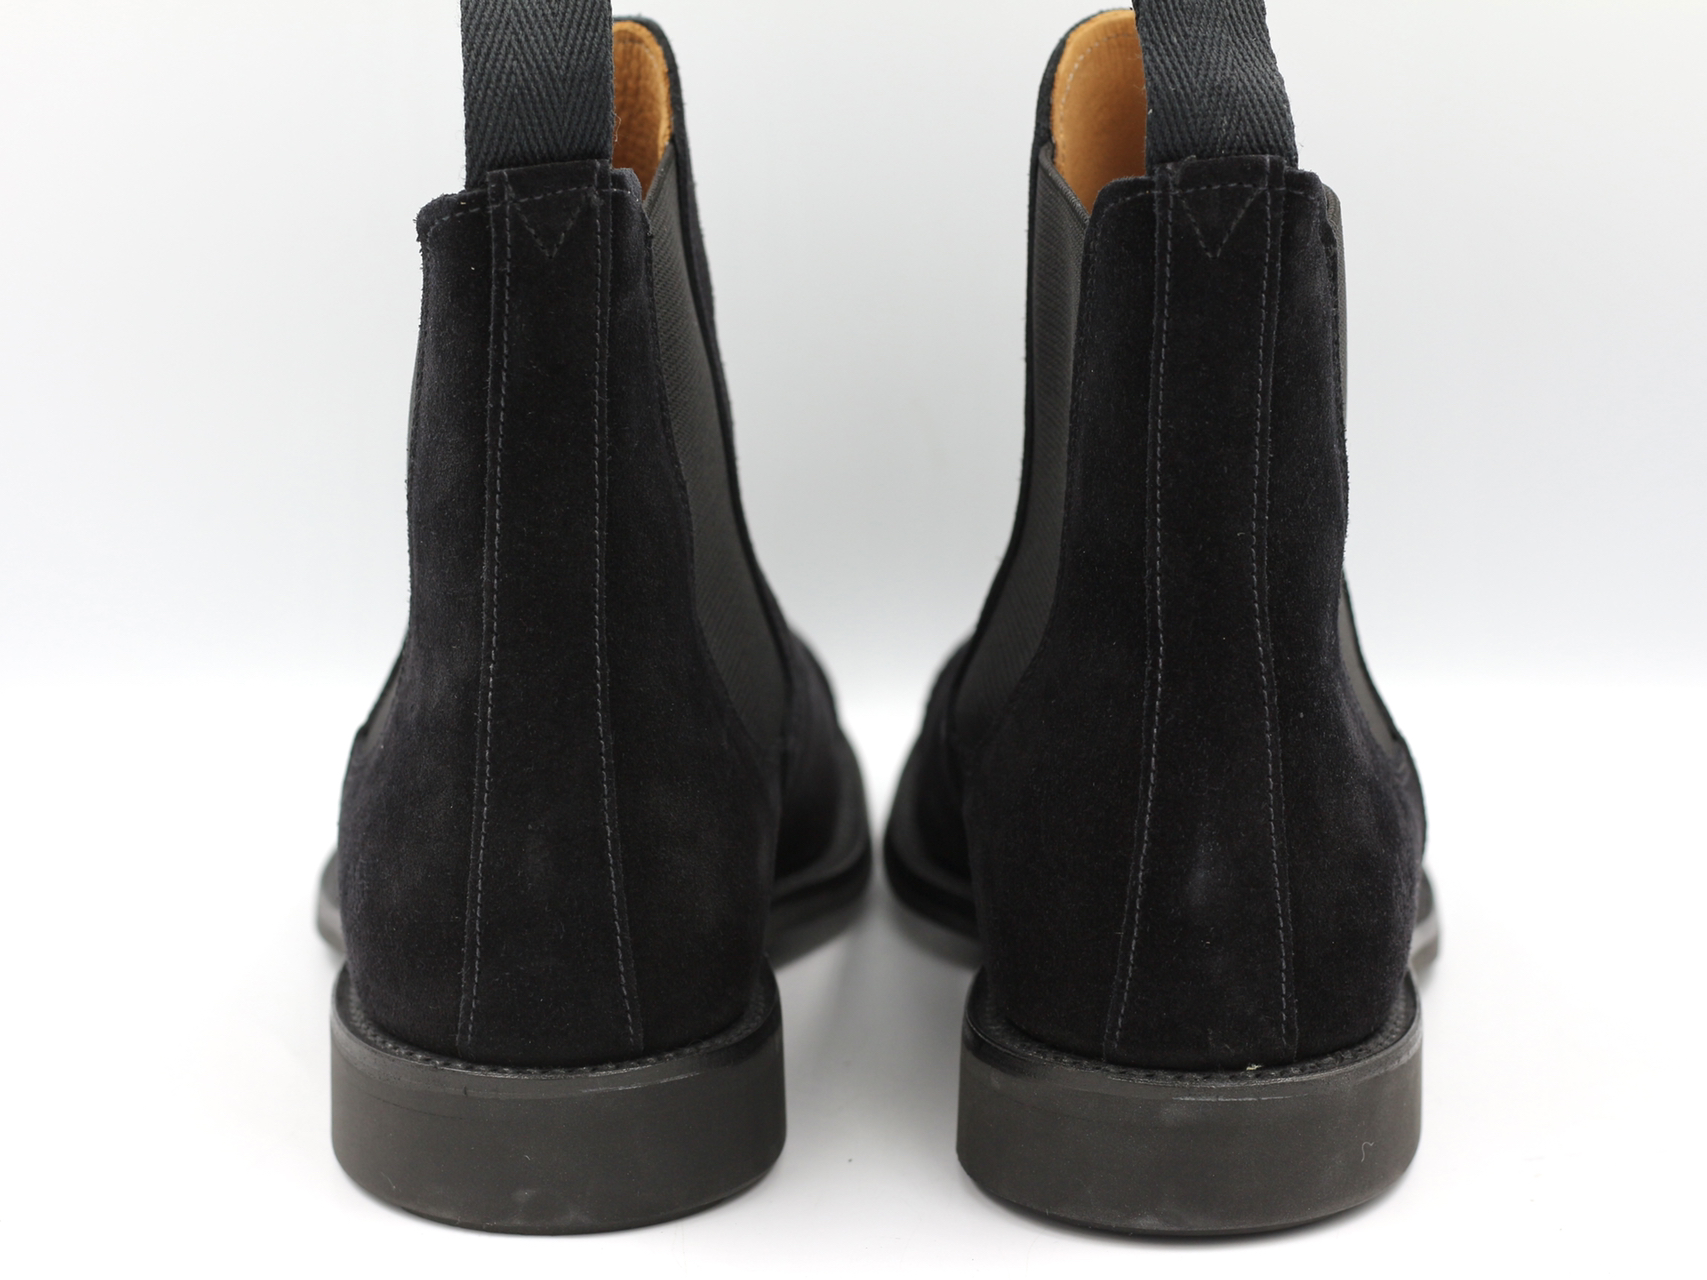 返品保証付 サイドゴア SANDERS サンダース 黒 26cm 新品未使用品 ブーツ